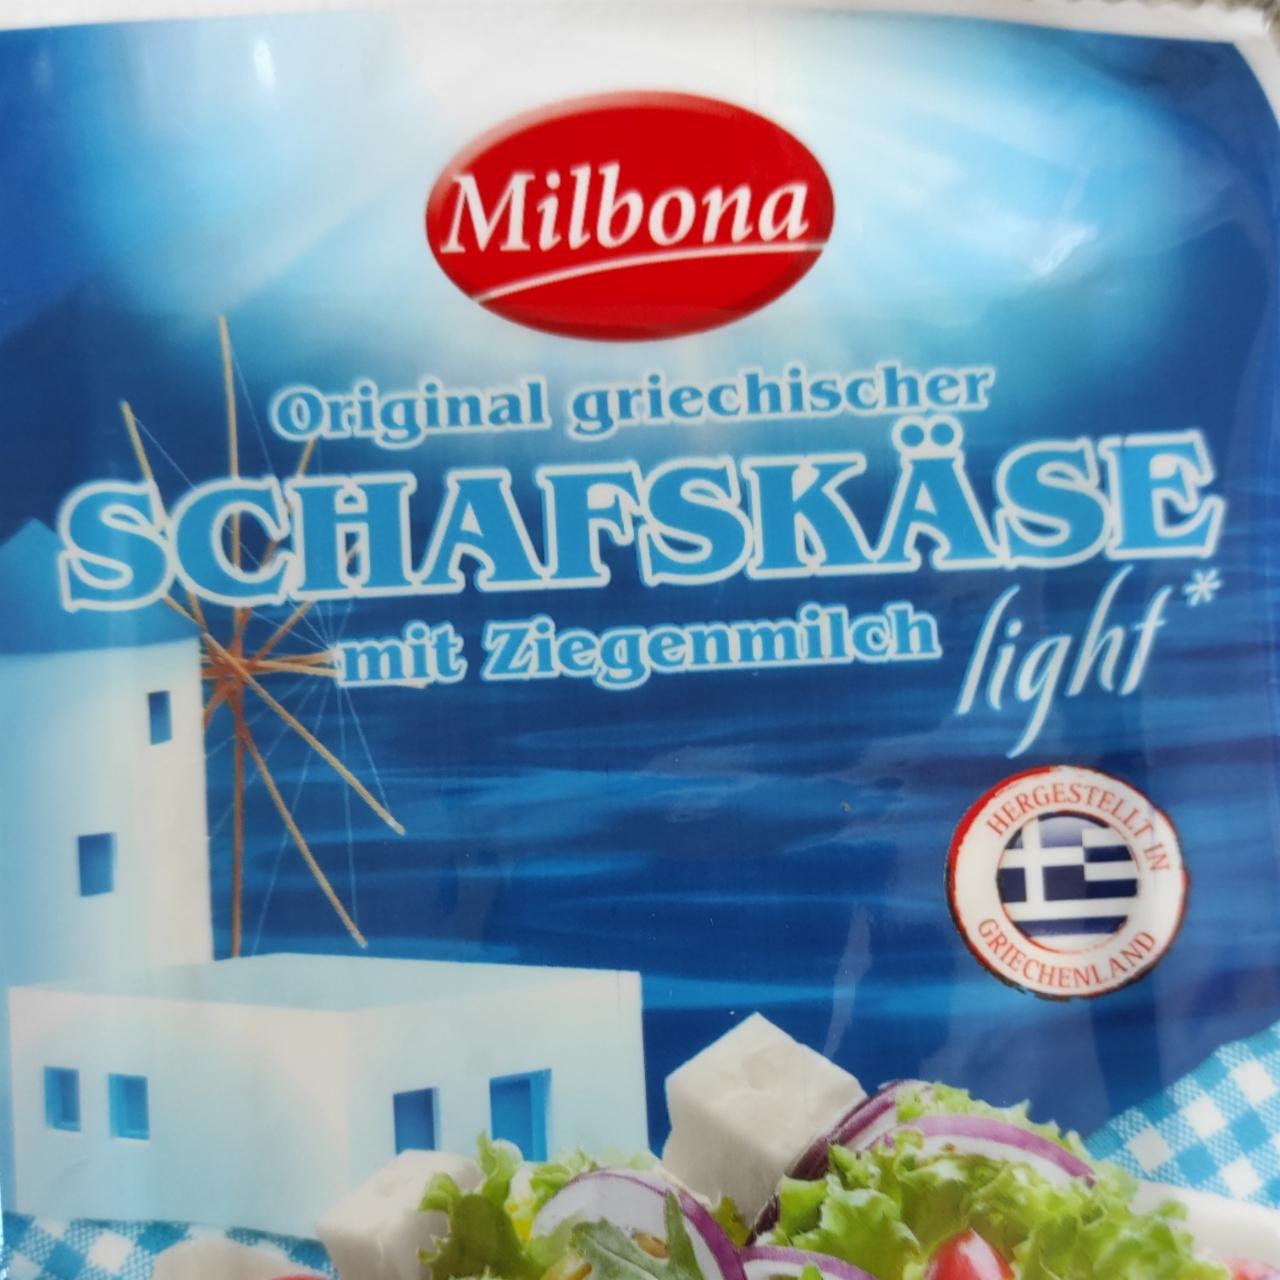 Fotografie - Schafskäse mit Ziegenmilch light Milbona